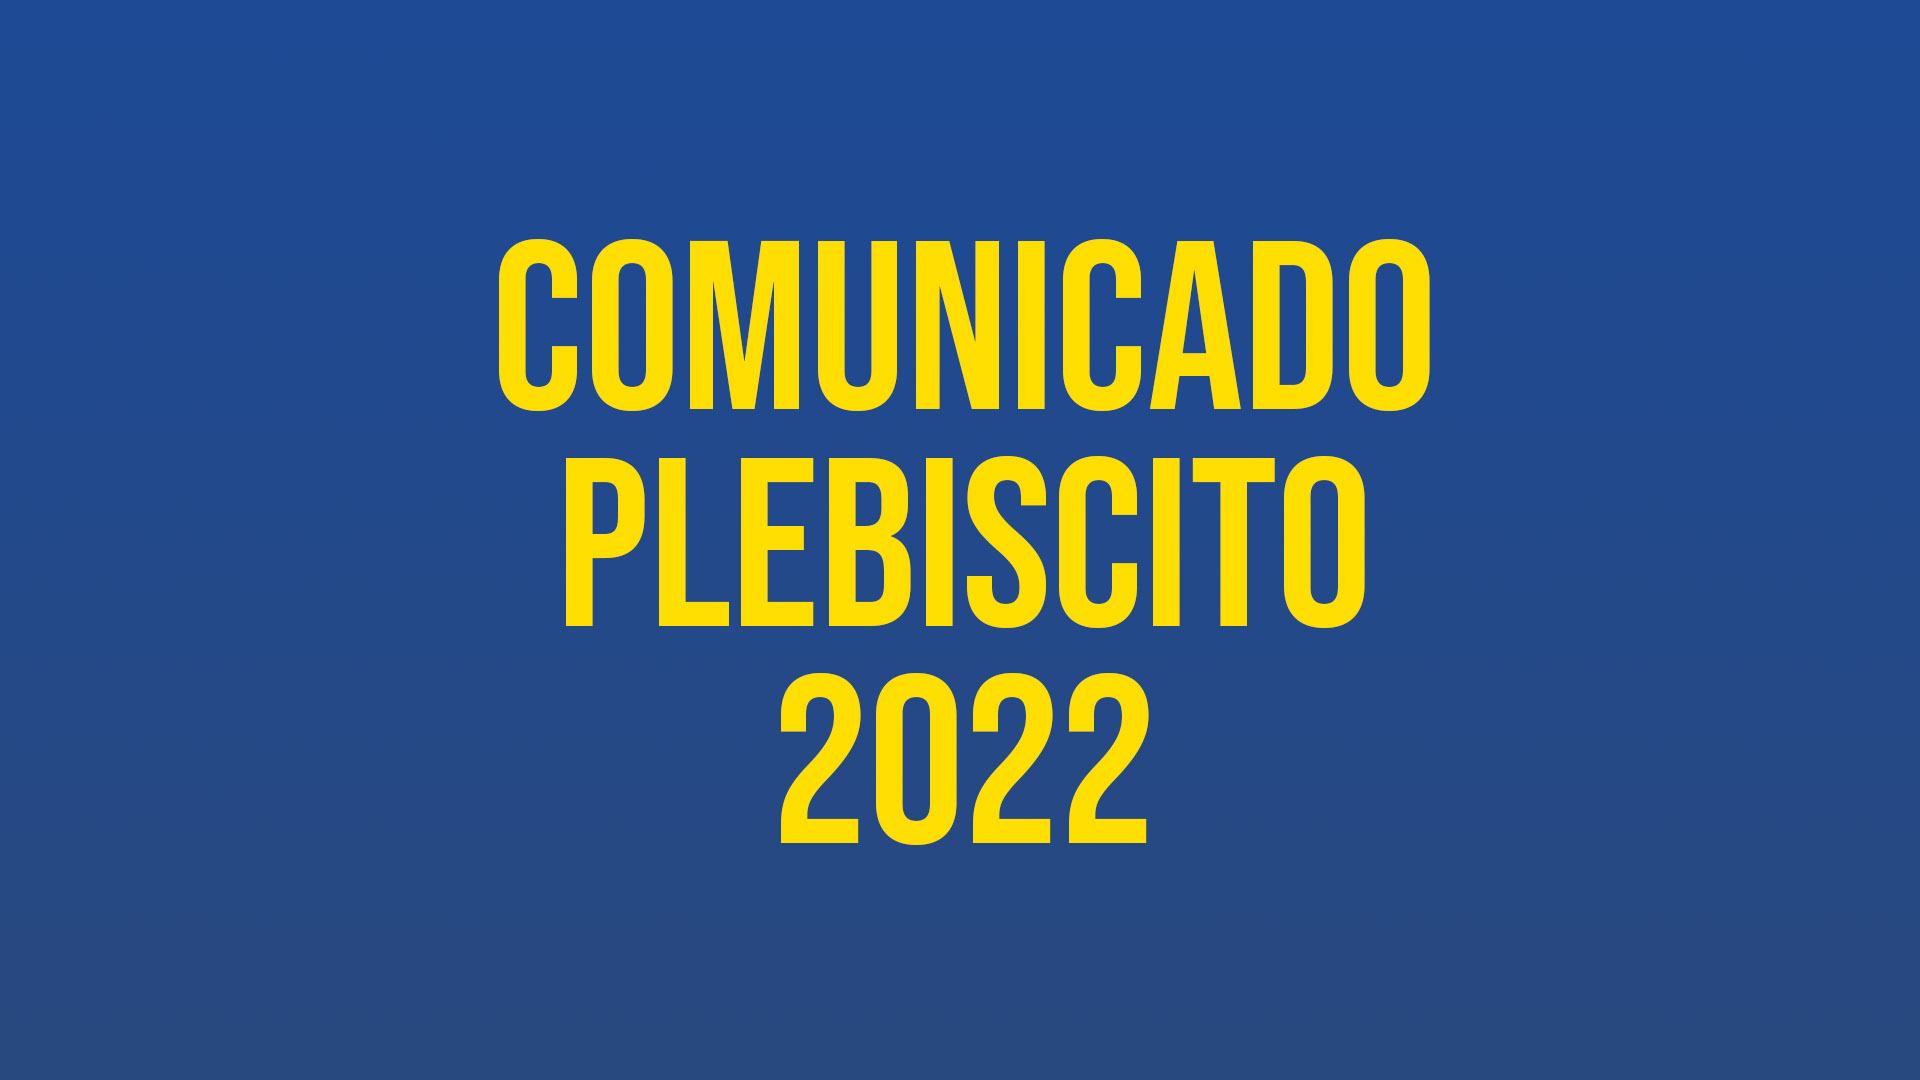 COMUNICADO PLEBISCITO 2022